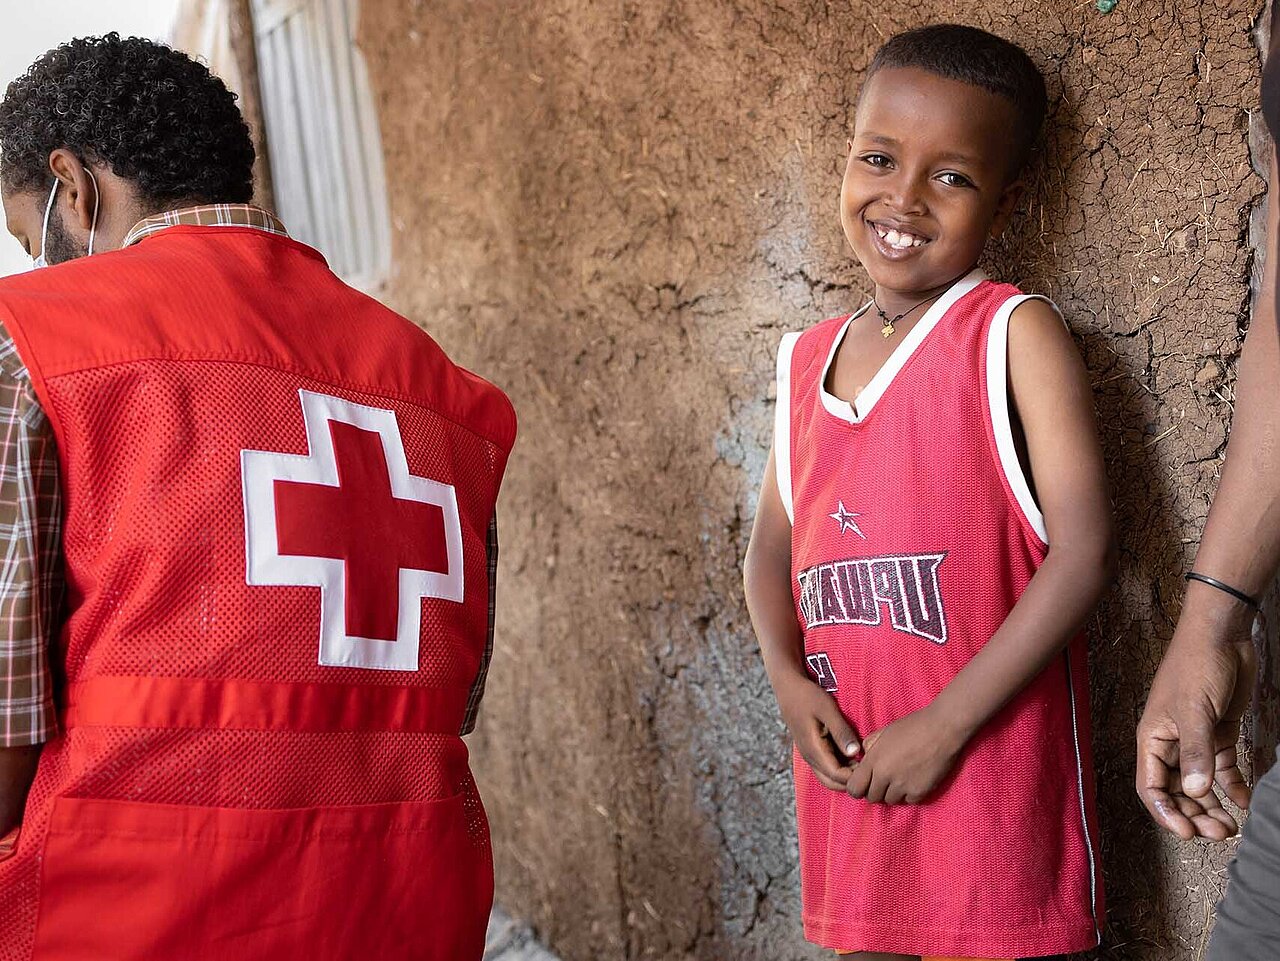 Lachender Junge in Äthiopien mit Rotkreuz-Helfer